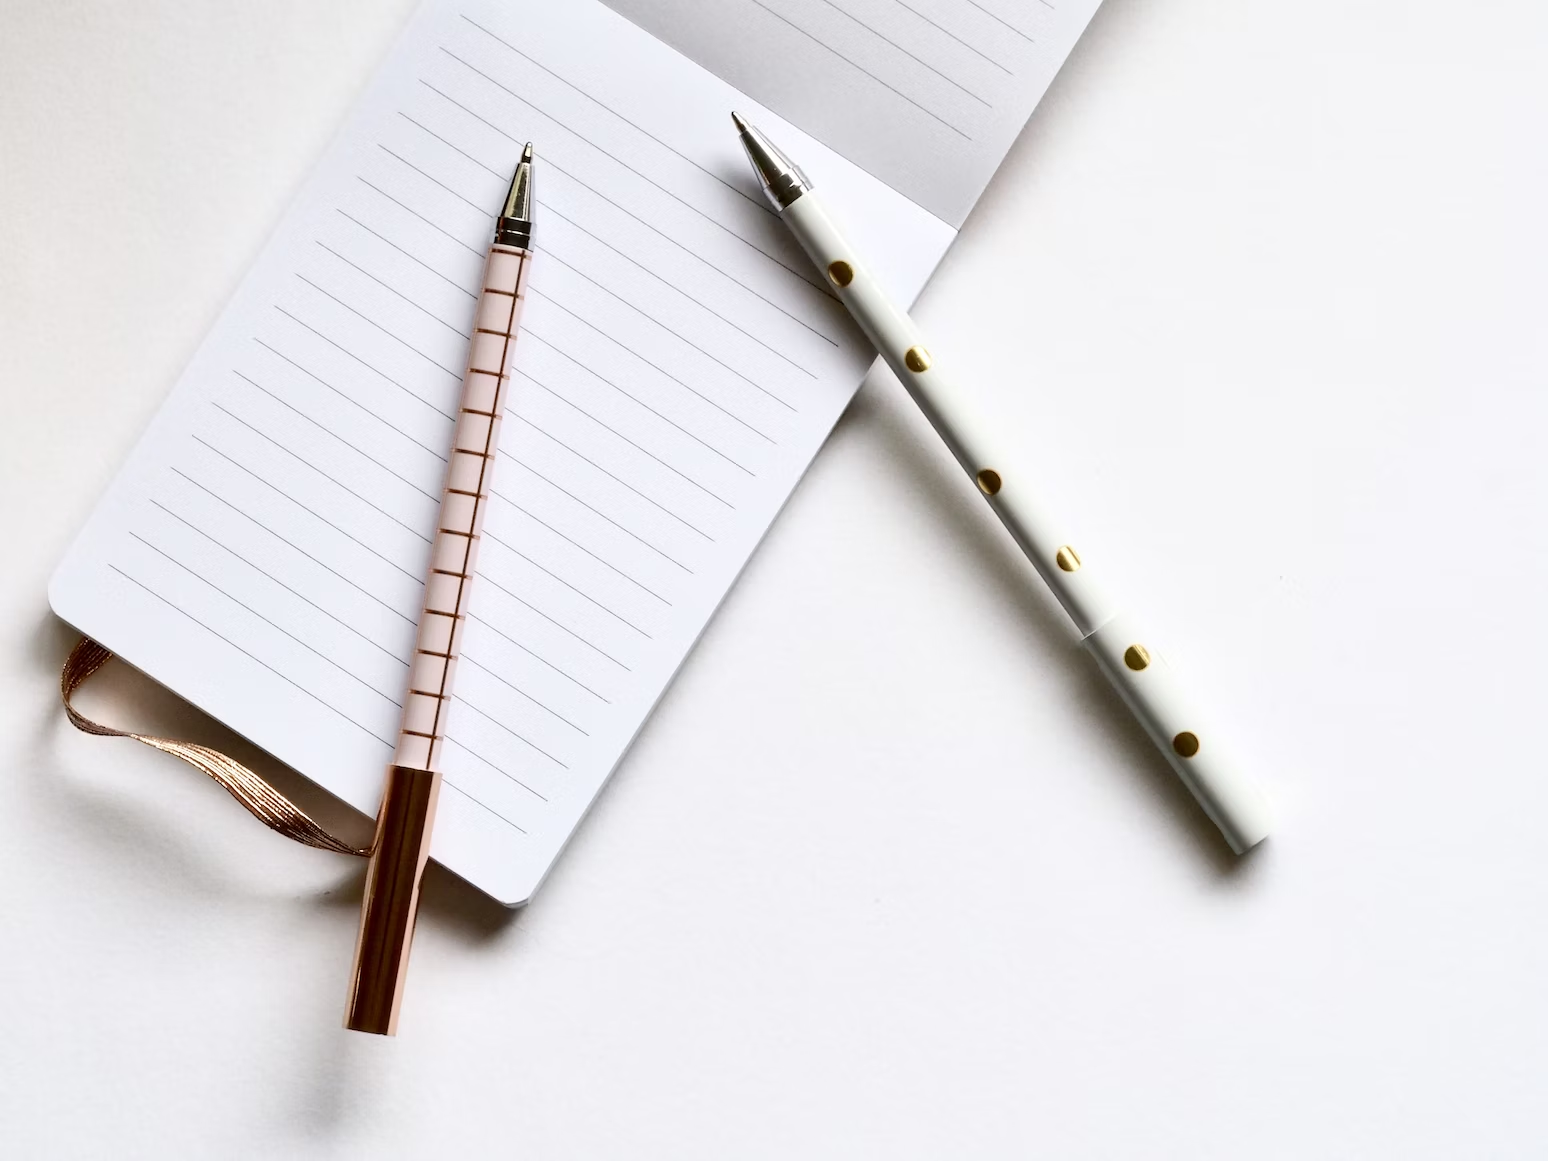 Deux stylos blancs à carreaux et à pois reposant sur un calepin ouvert sur une table blanche